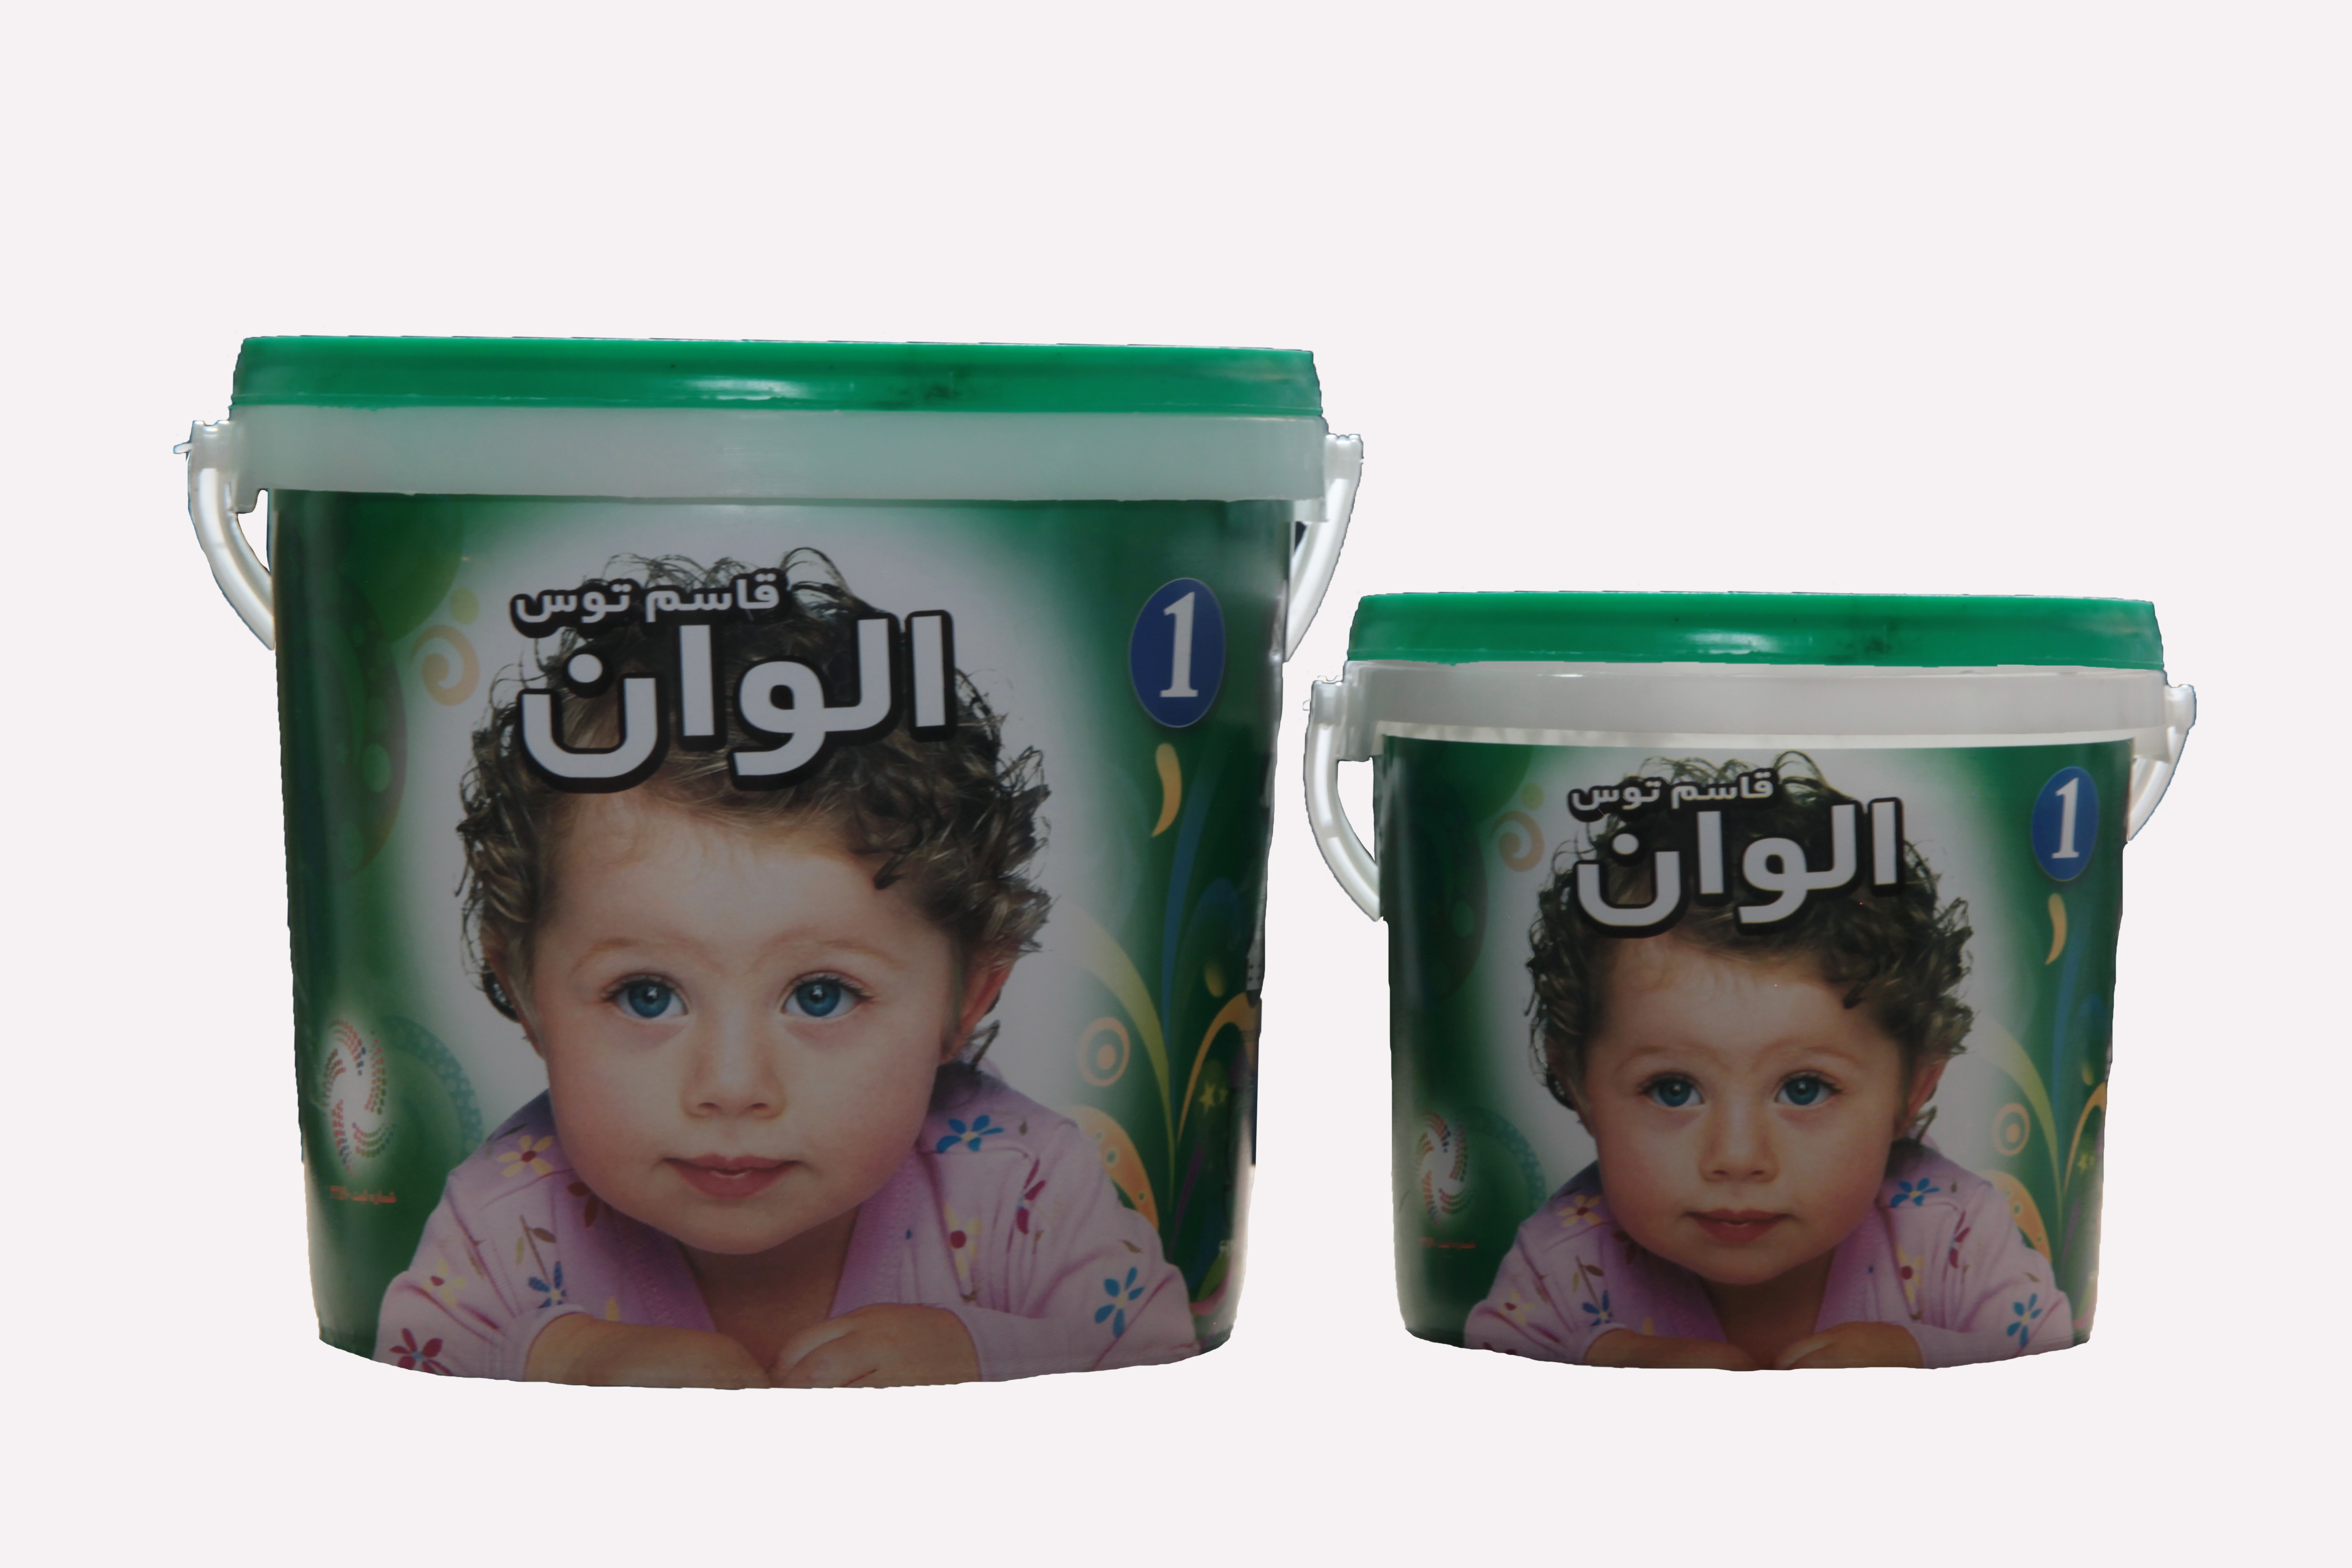 پوشرنگ نیم پلاستیک درجه یک ممتاز
در بسته بندی :
گالن ، دبه ، حلب